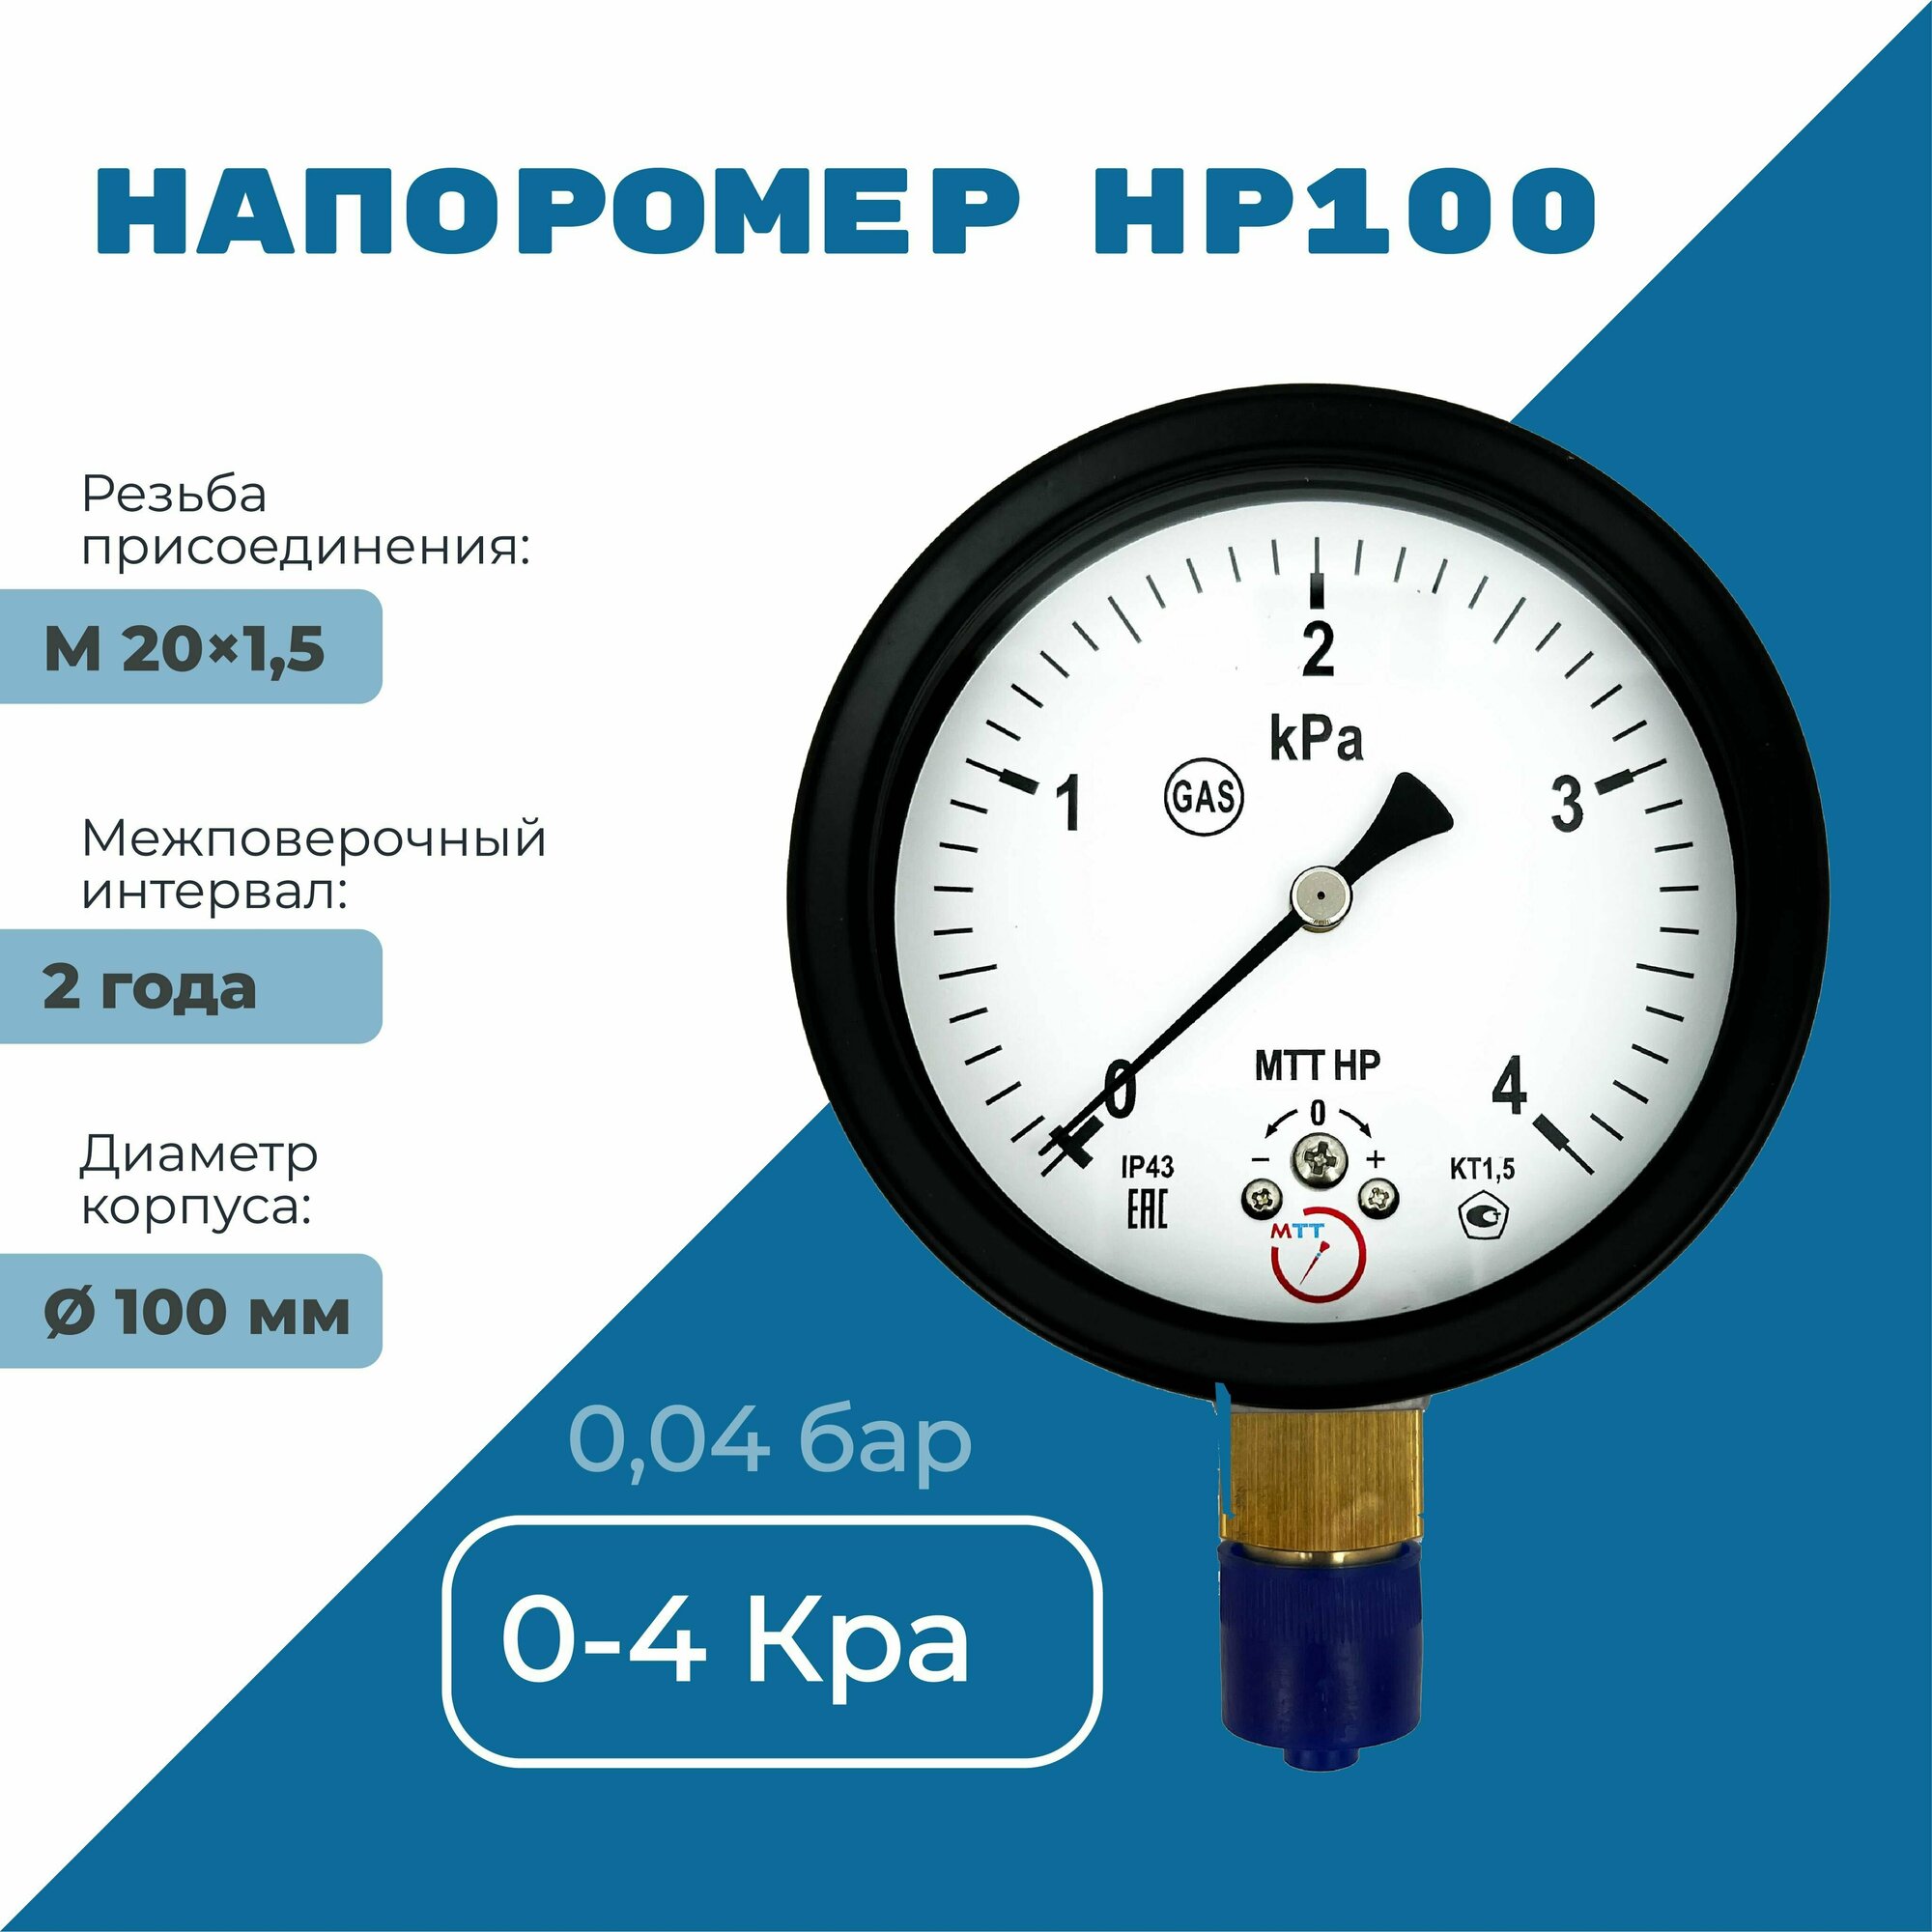 Напоромер НР100 давление от 0 до 4 кПа, резьба М20х1,5, класс точности 1,5, диаметр корпуса 100 мм, поверка на 2 года